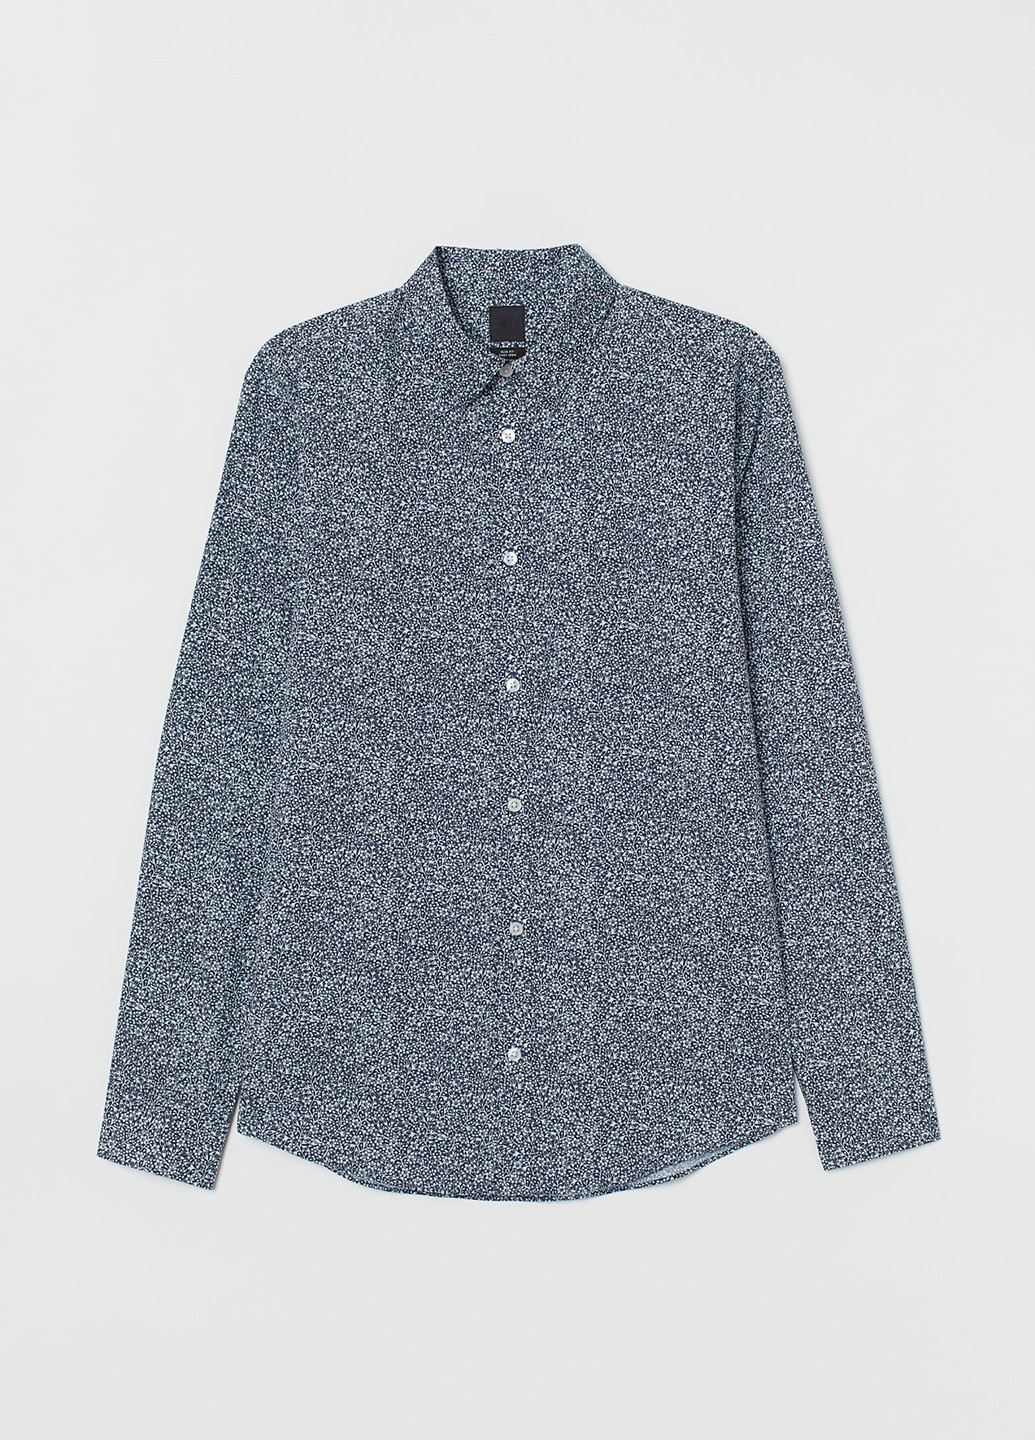 Темно-синяя кэжуал рубашка с цветами H&M